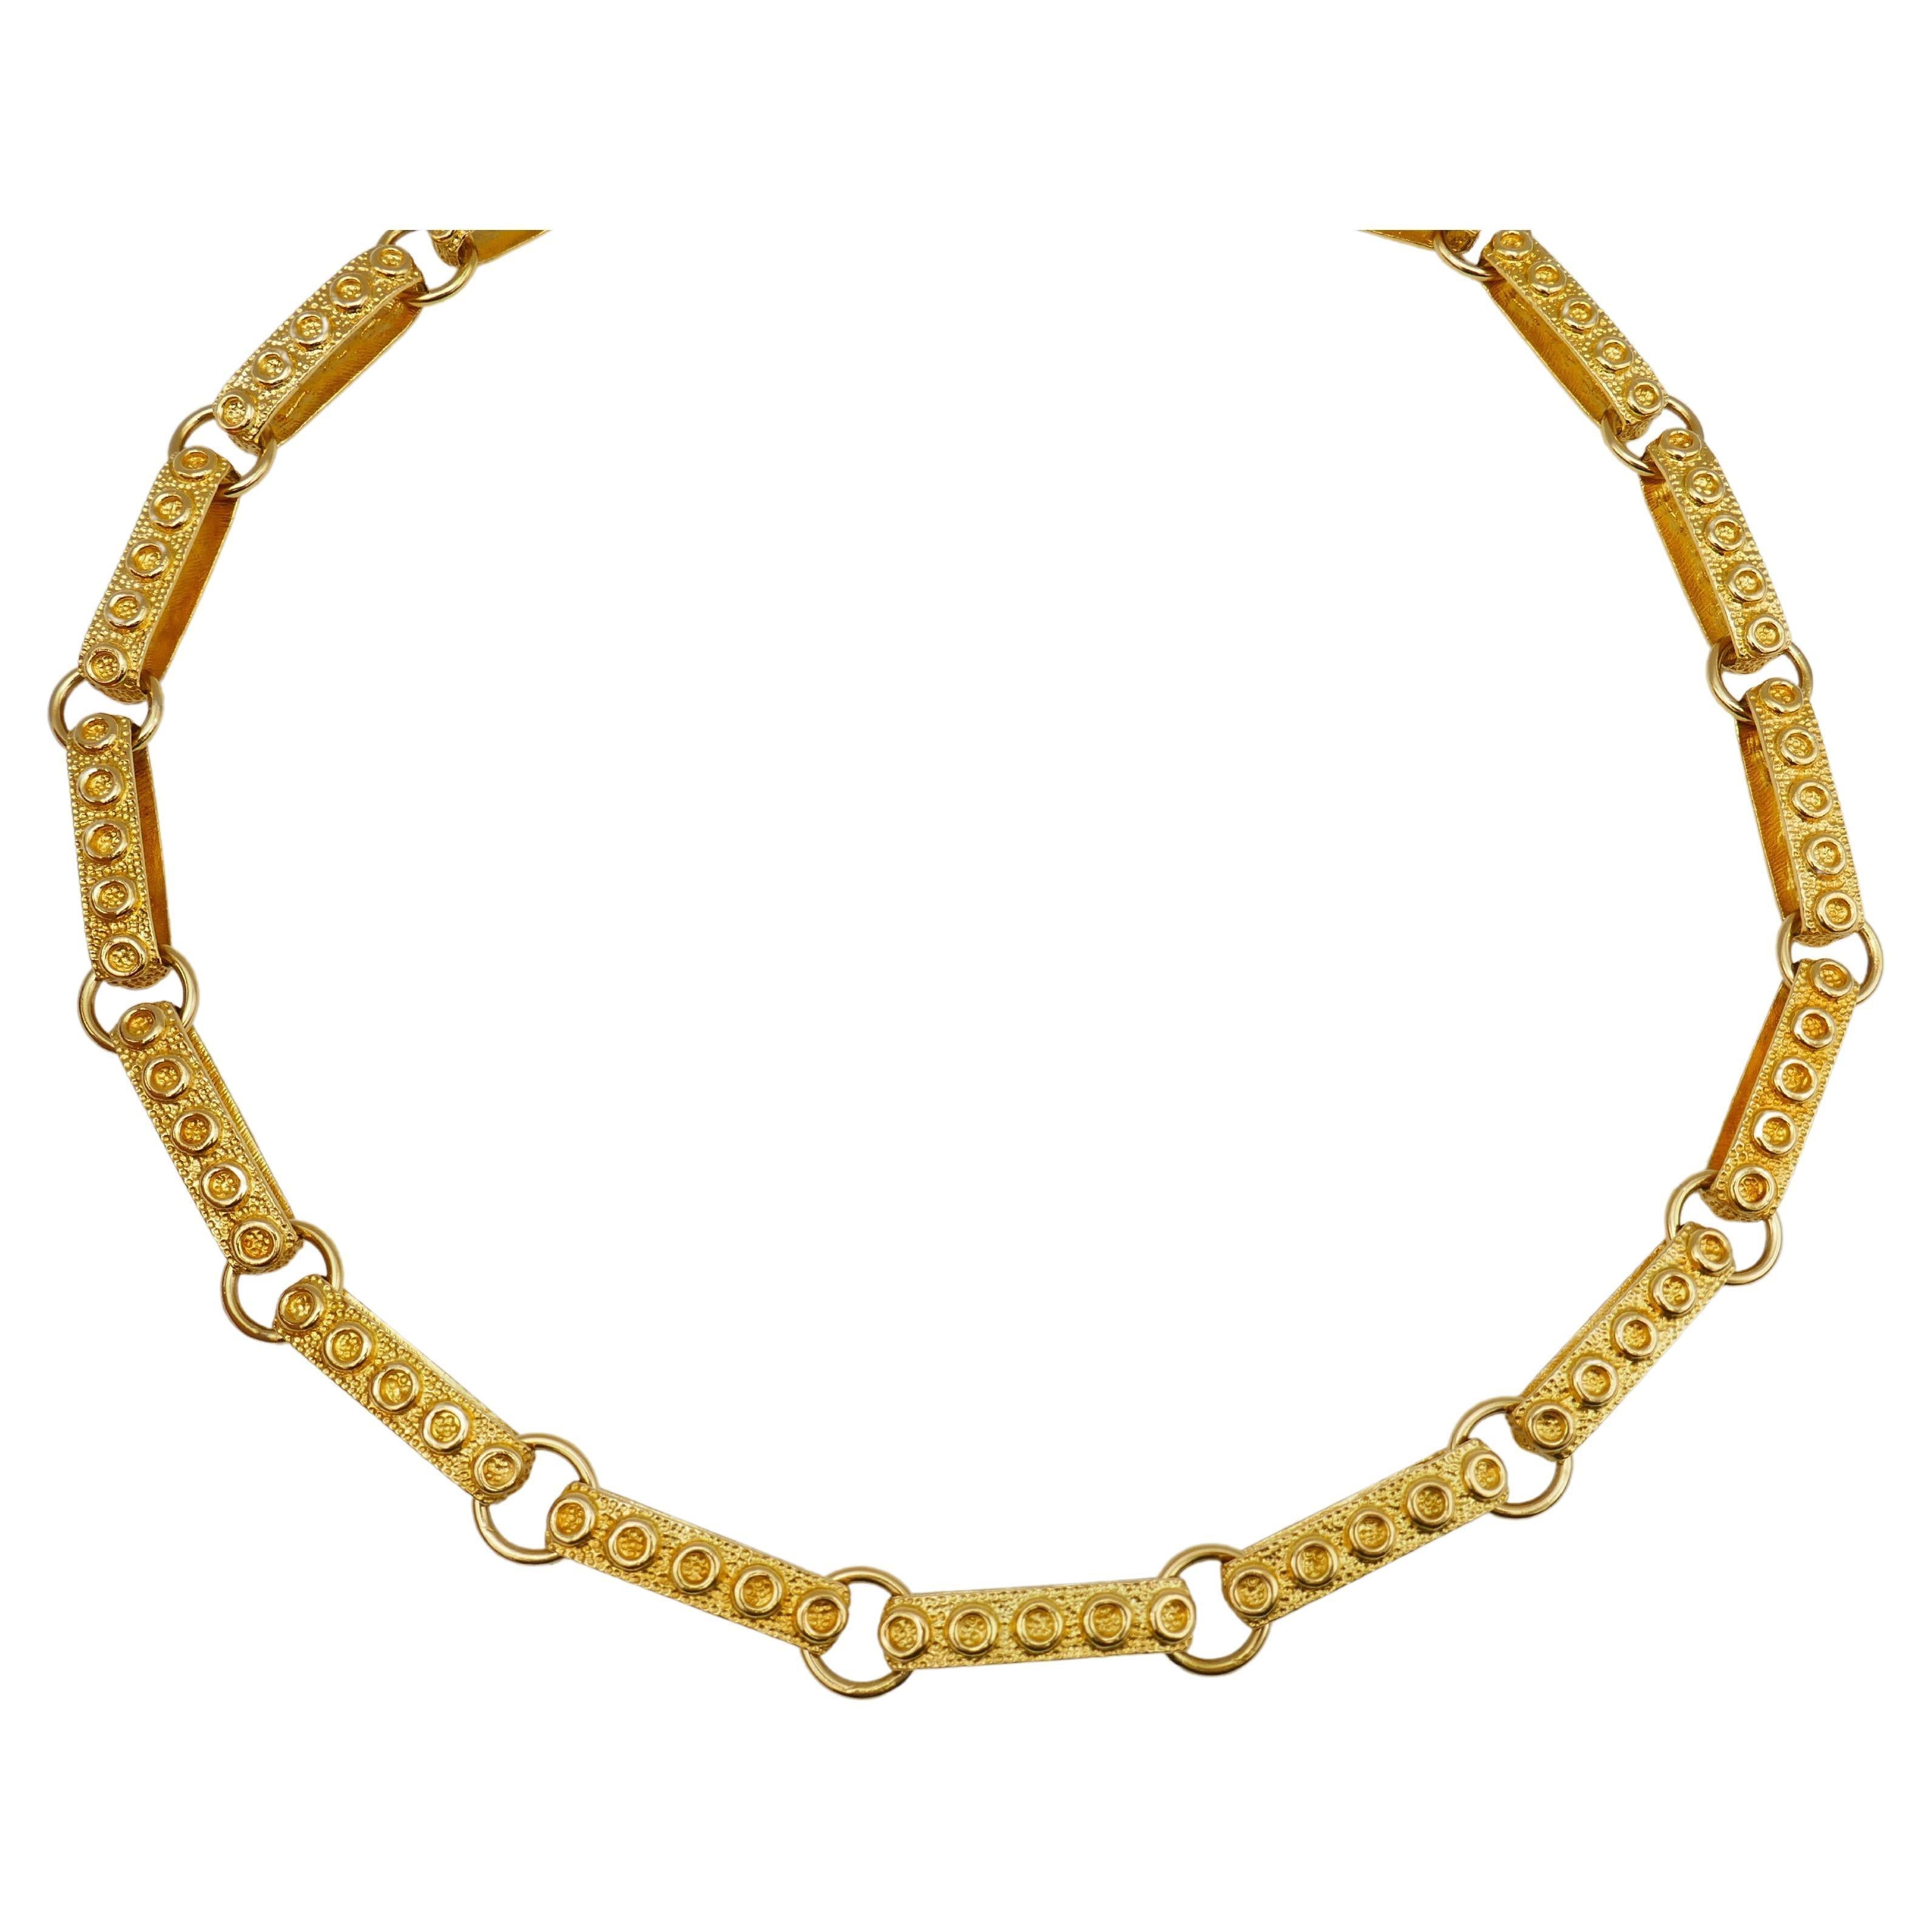 Bel exemple de bijoux des années 1950, ce collier en or 14k possède tous les attributs de l'après-guerre. C'est une pièce audacieuse, joyeuse et qui fait tourner les têtes. Les liens sont constitués de longues boucles en or martelé. La longueur